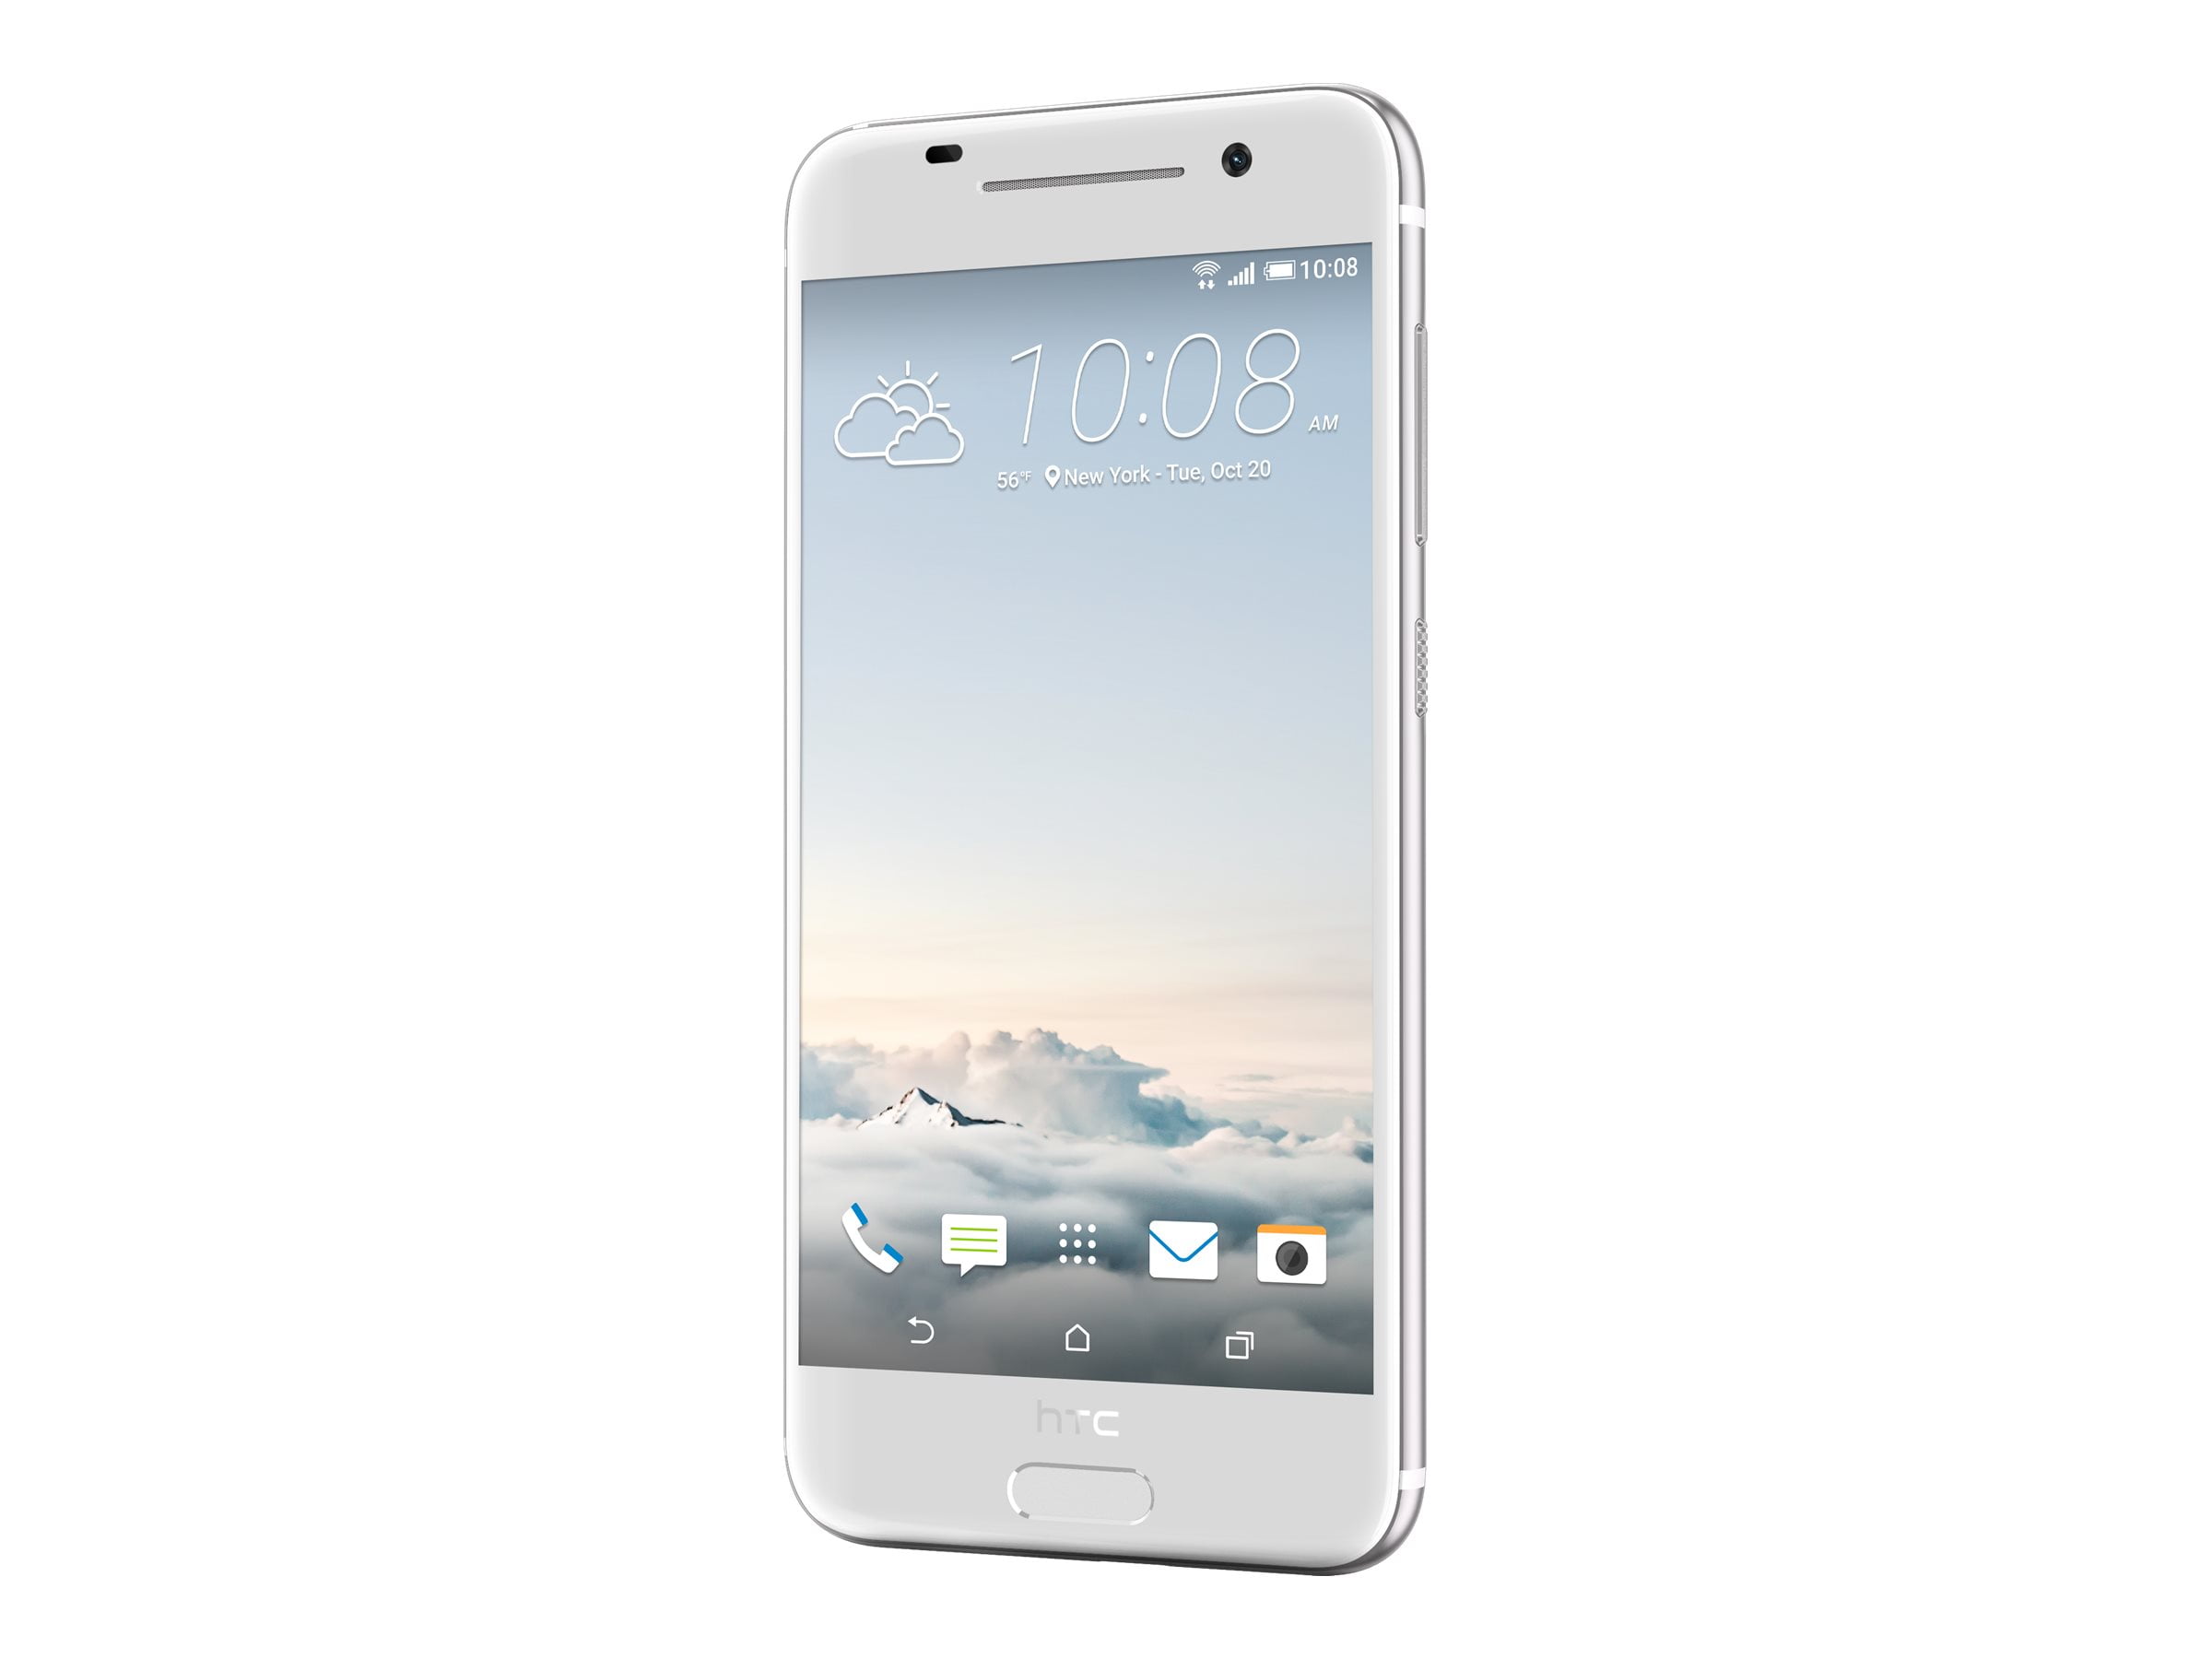 HTC One (A9) - Smartphone - 4G LTE - 32 GB - microSDXC ...